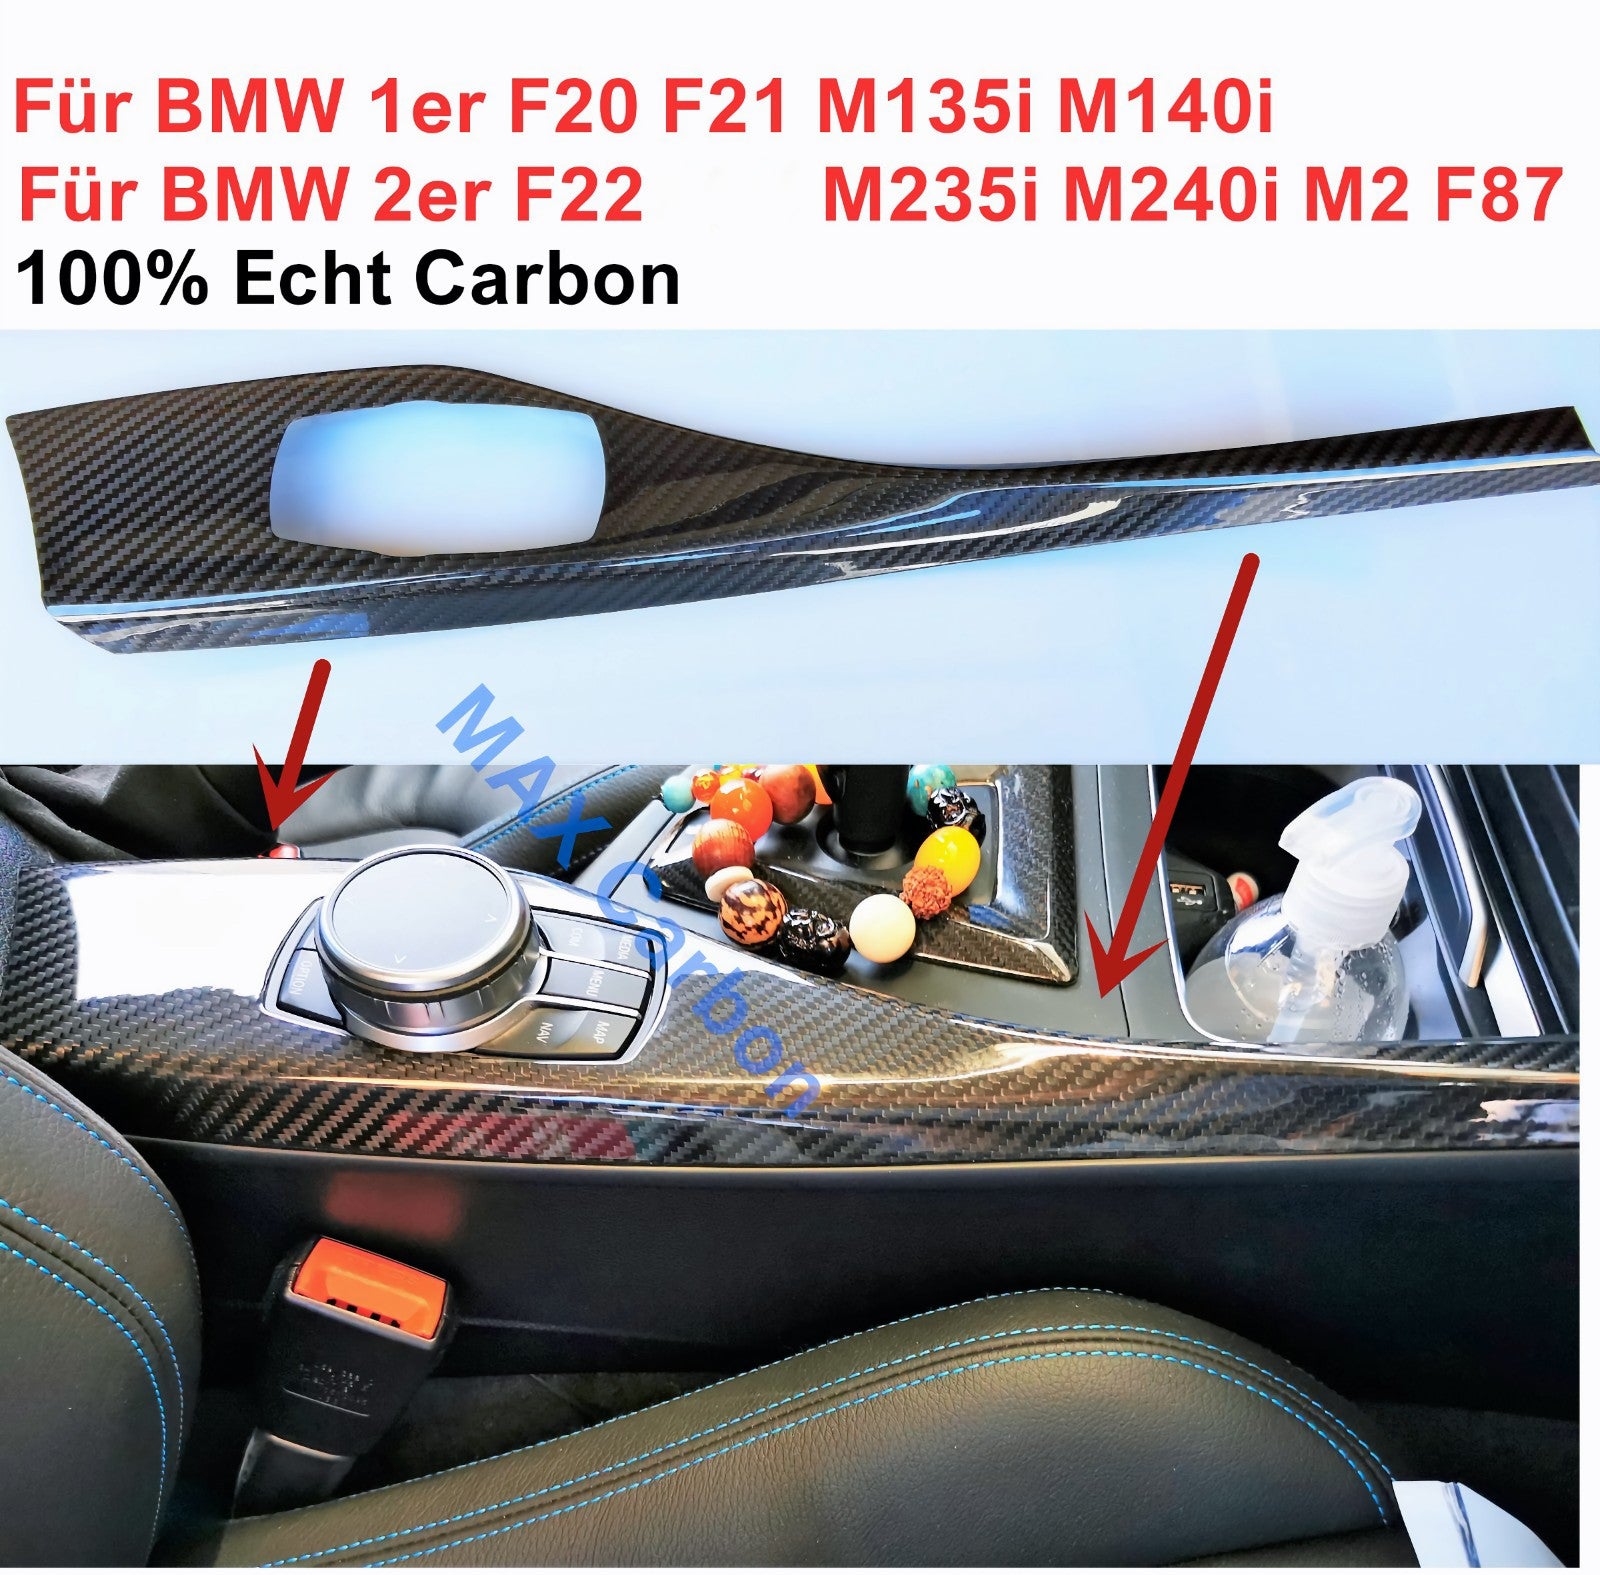 MAX CARBON Performance DEKORLEISTEN Mittelkonsole für BMW F20 F21 F22 M2 M2C F87